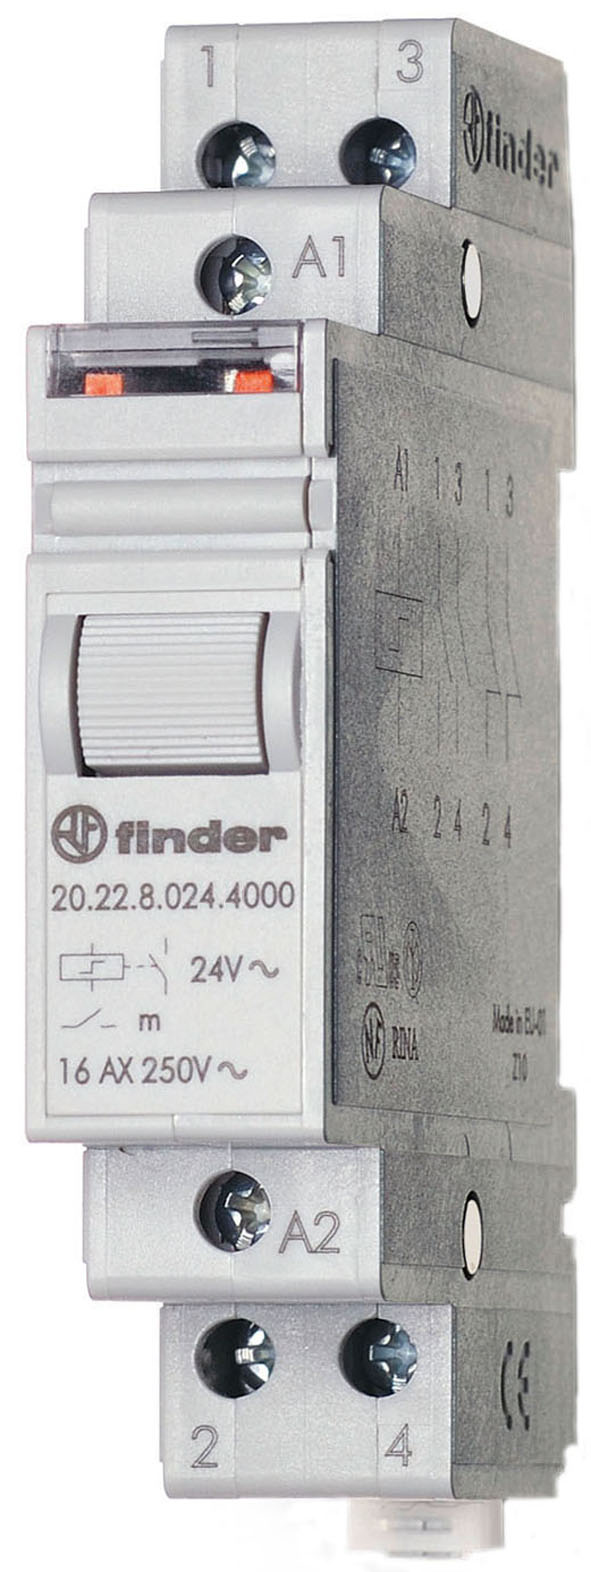 Impulsschakelaar voor in-line installatie, 1 maakcontact 16 A, aan/uit, voor 12 V DC